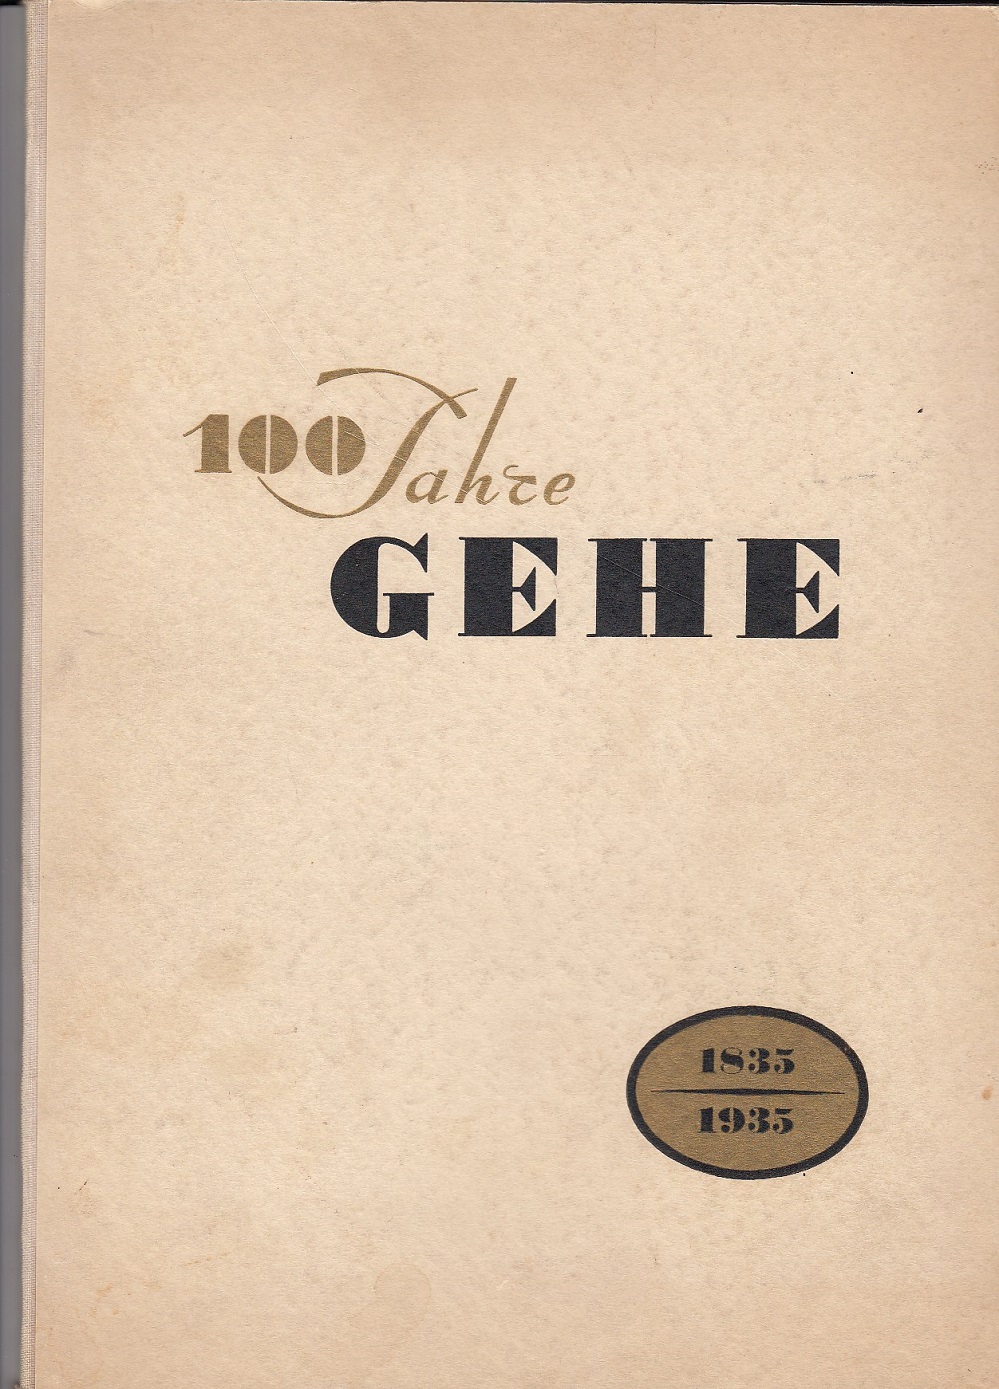   100 Jahre Gehe. 1835 - 1935. 